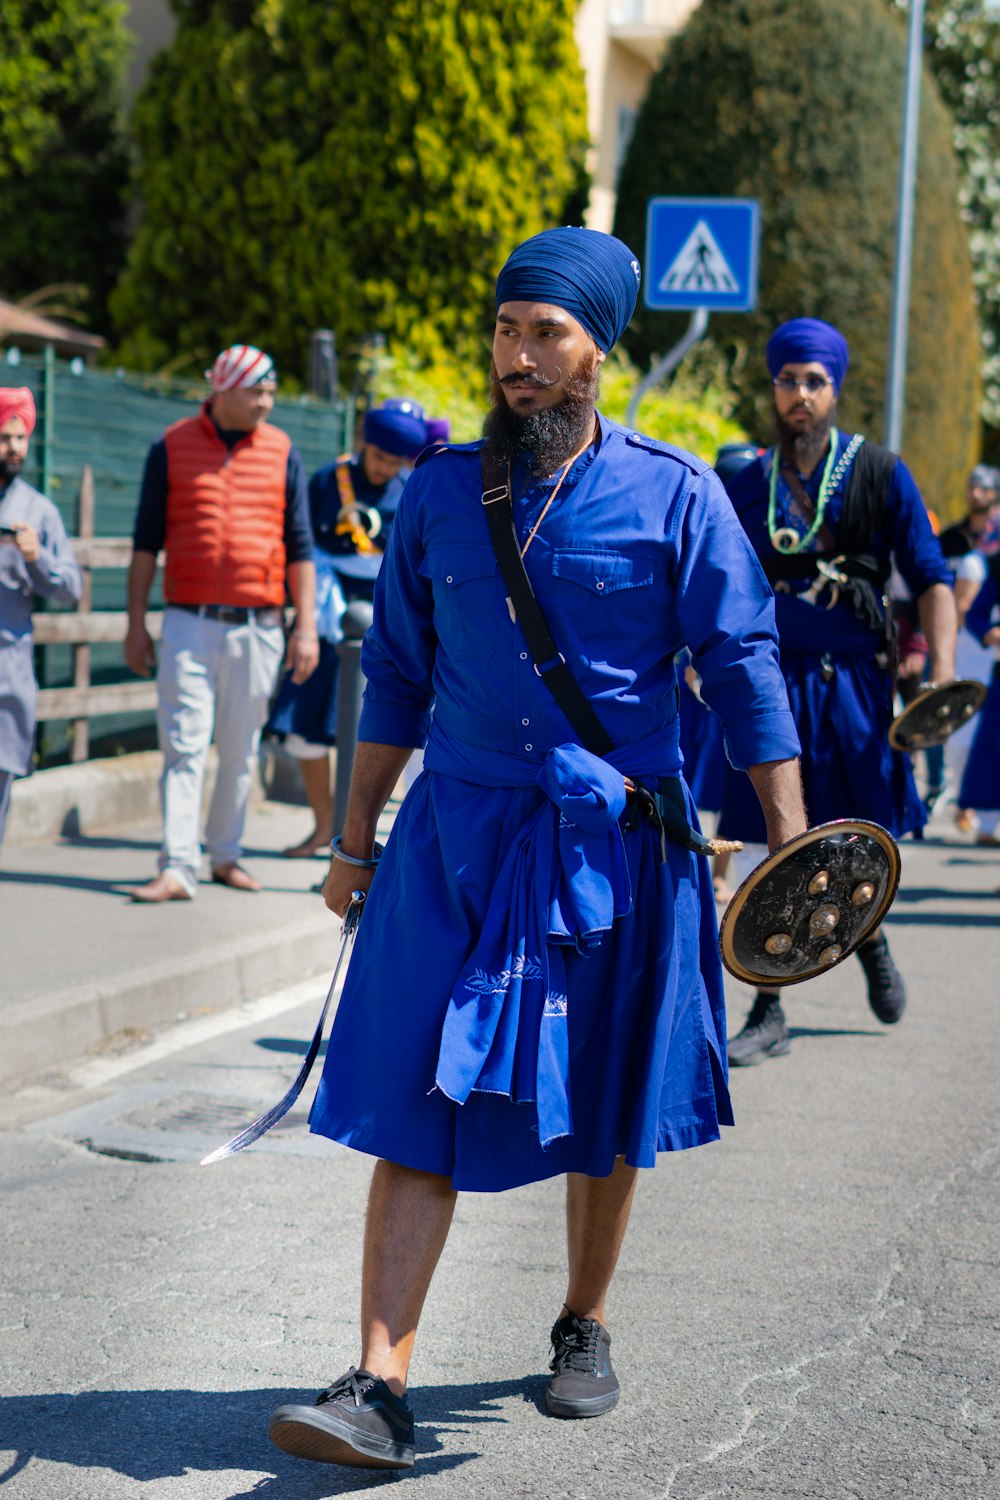 파란 옷을 입은 남자가 거리를 걷고 있다